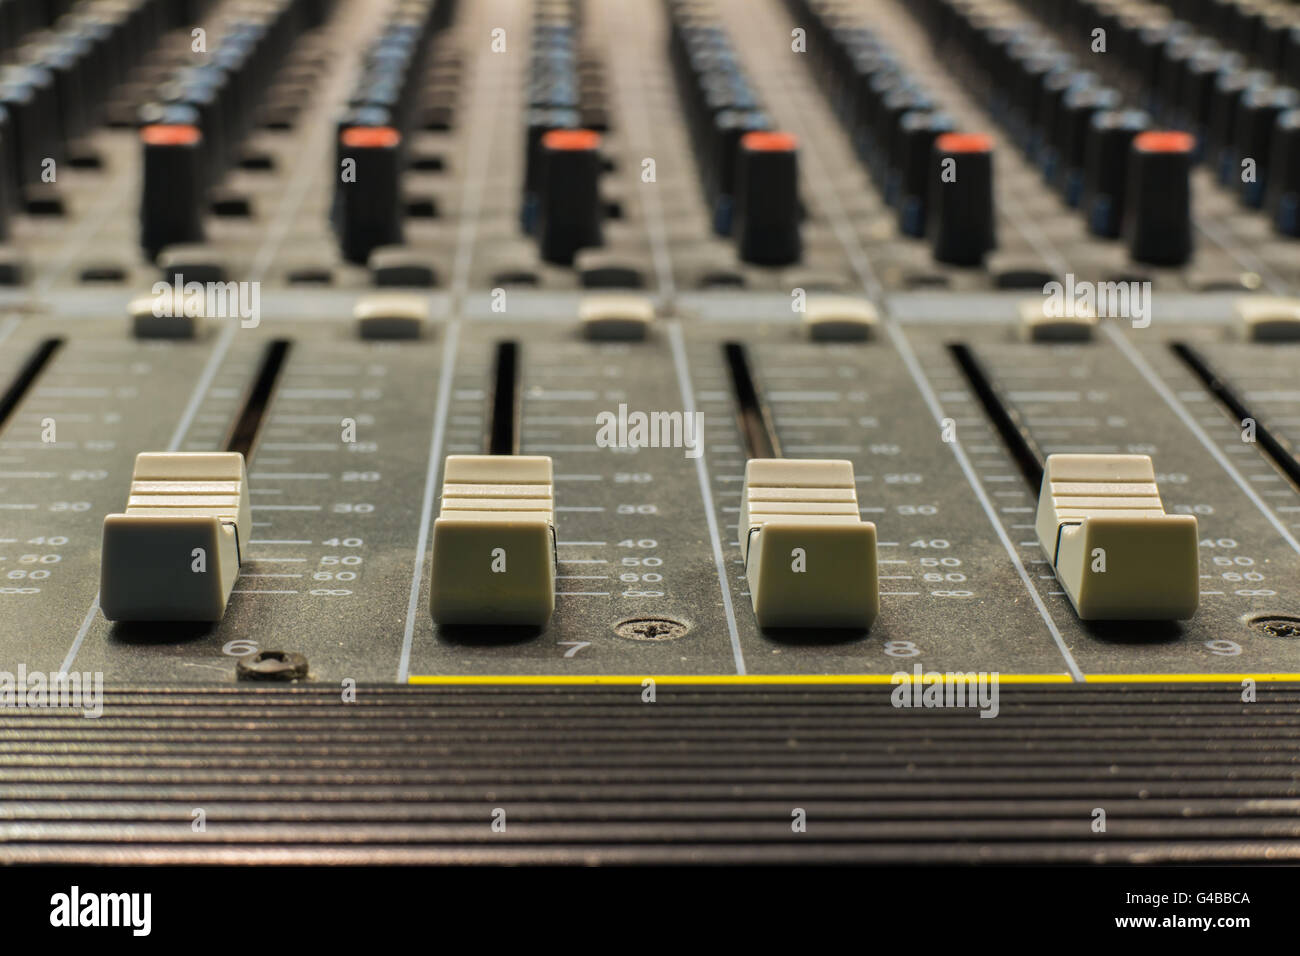 L'équipement pour les boutons de commande de mixage sonore Banque D'Images